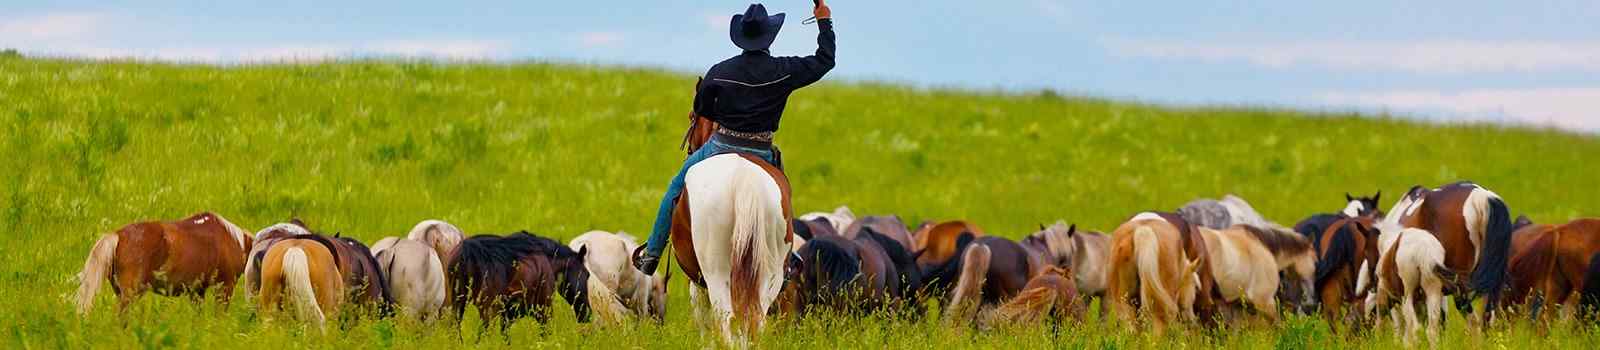 SILVER-SPUR -USA Cowboy-auf-Pferd